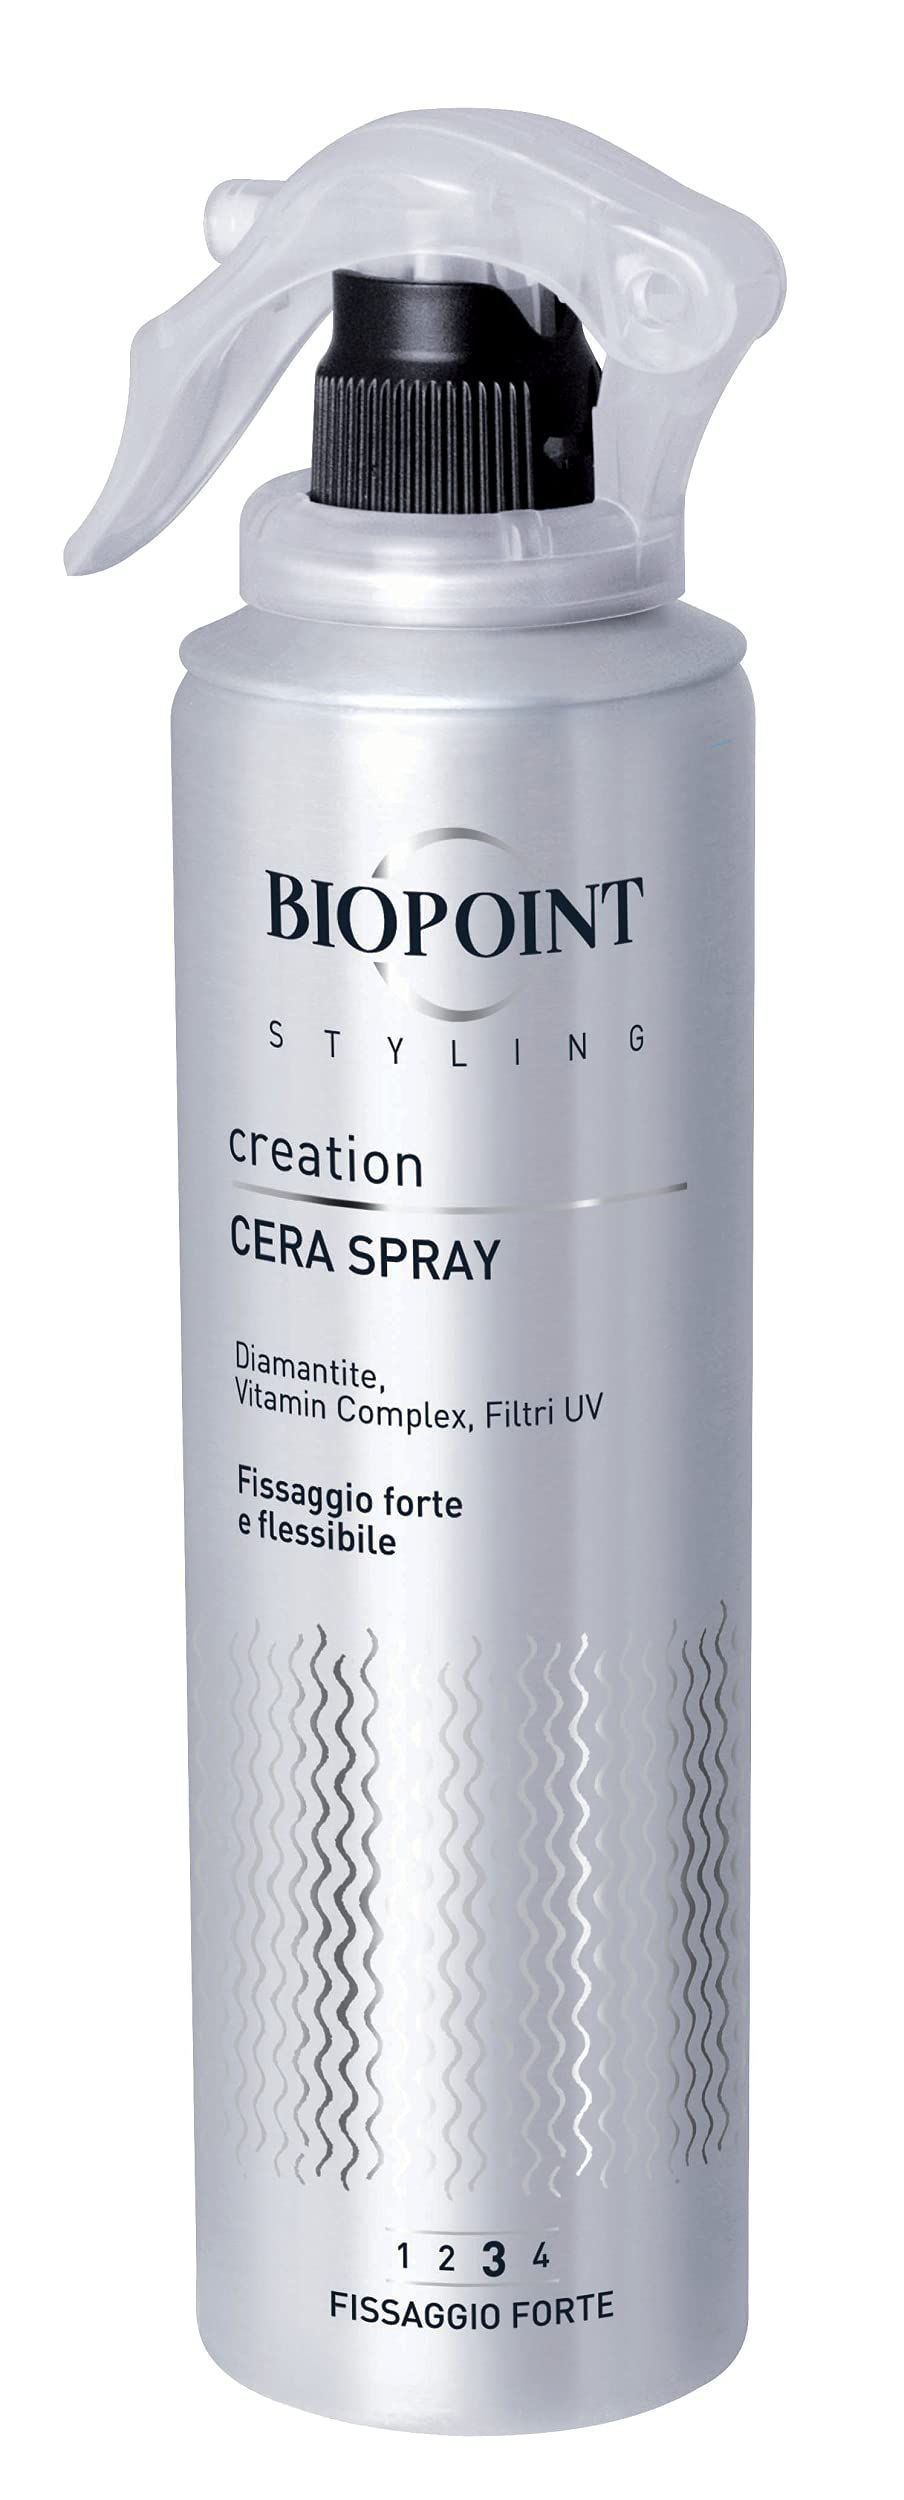 Styling Cera Spray Fissaggio Forte e Flessibile, 150 ml